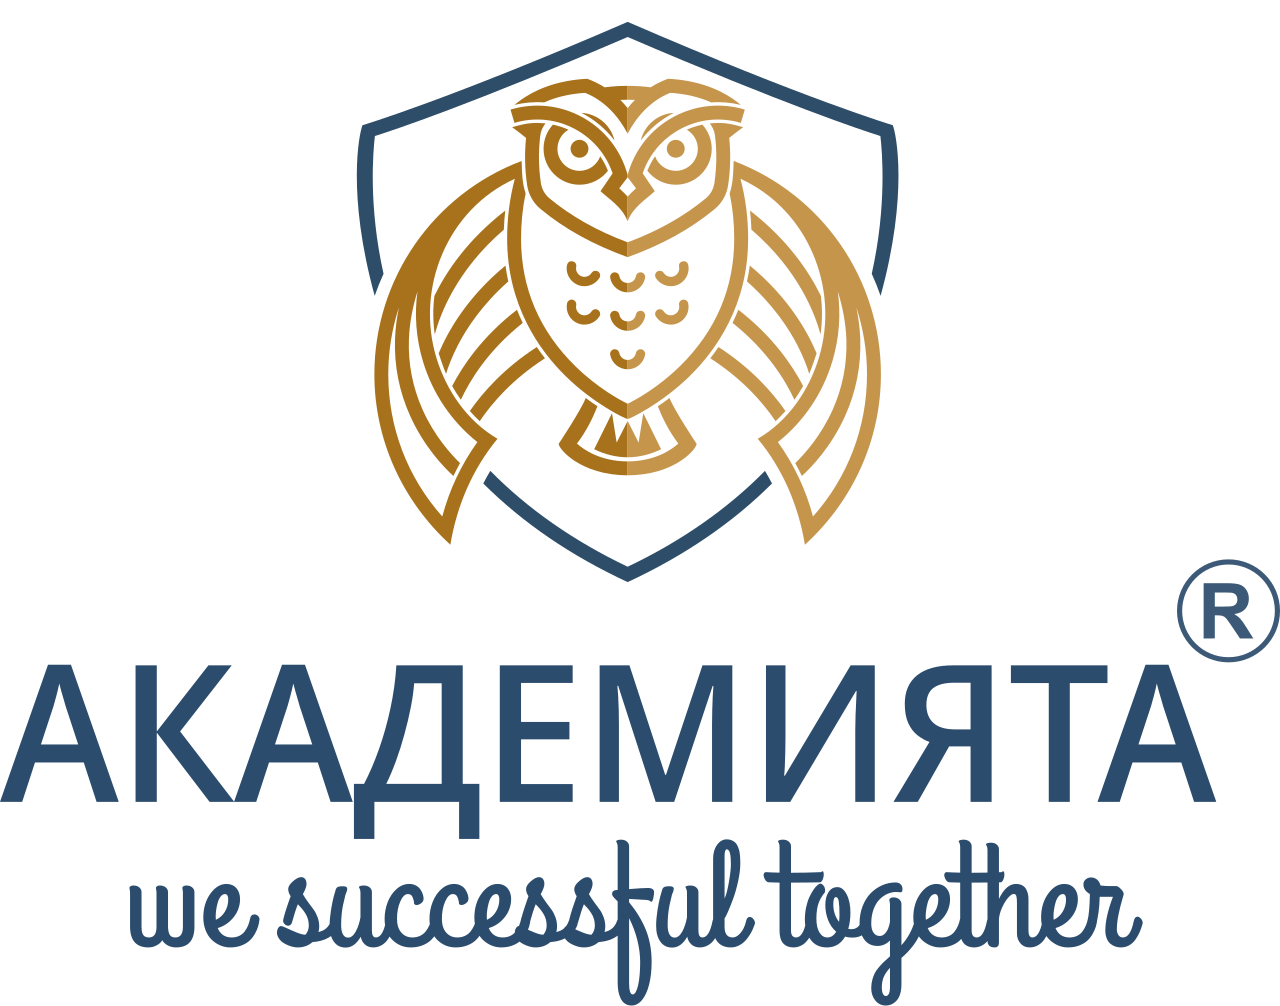 АКАДЕМИЯТА's logo